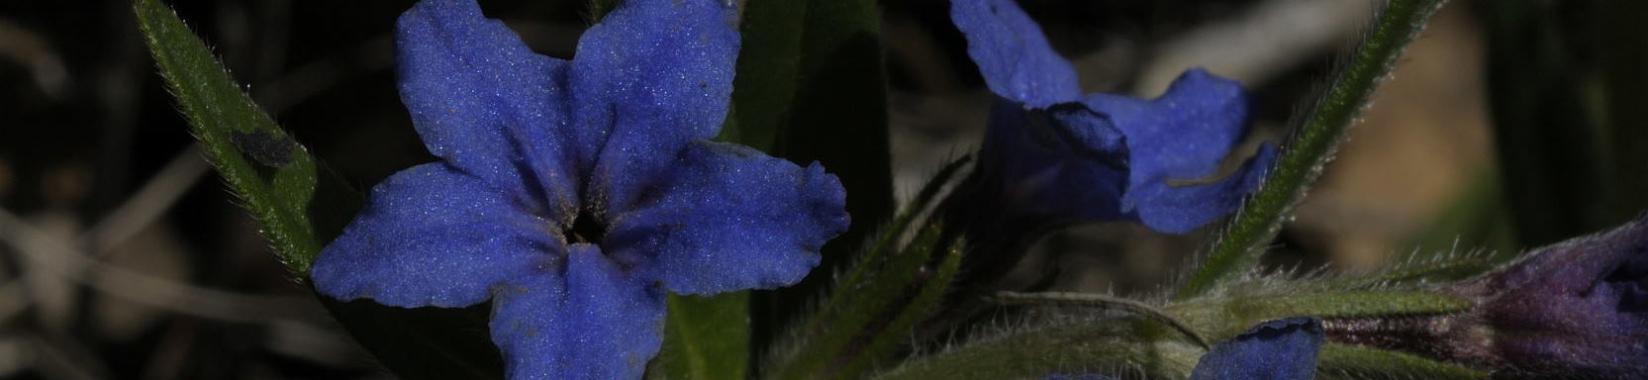 Blauroter Steinsame (Buglossoides purpurocaerulea) - Blüte